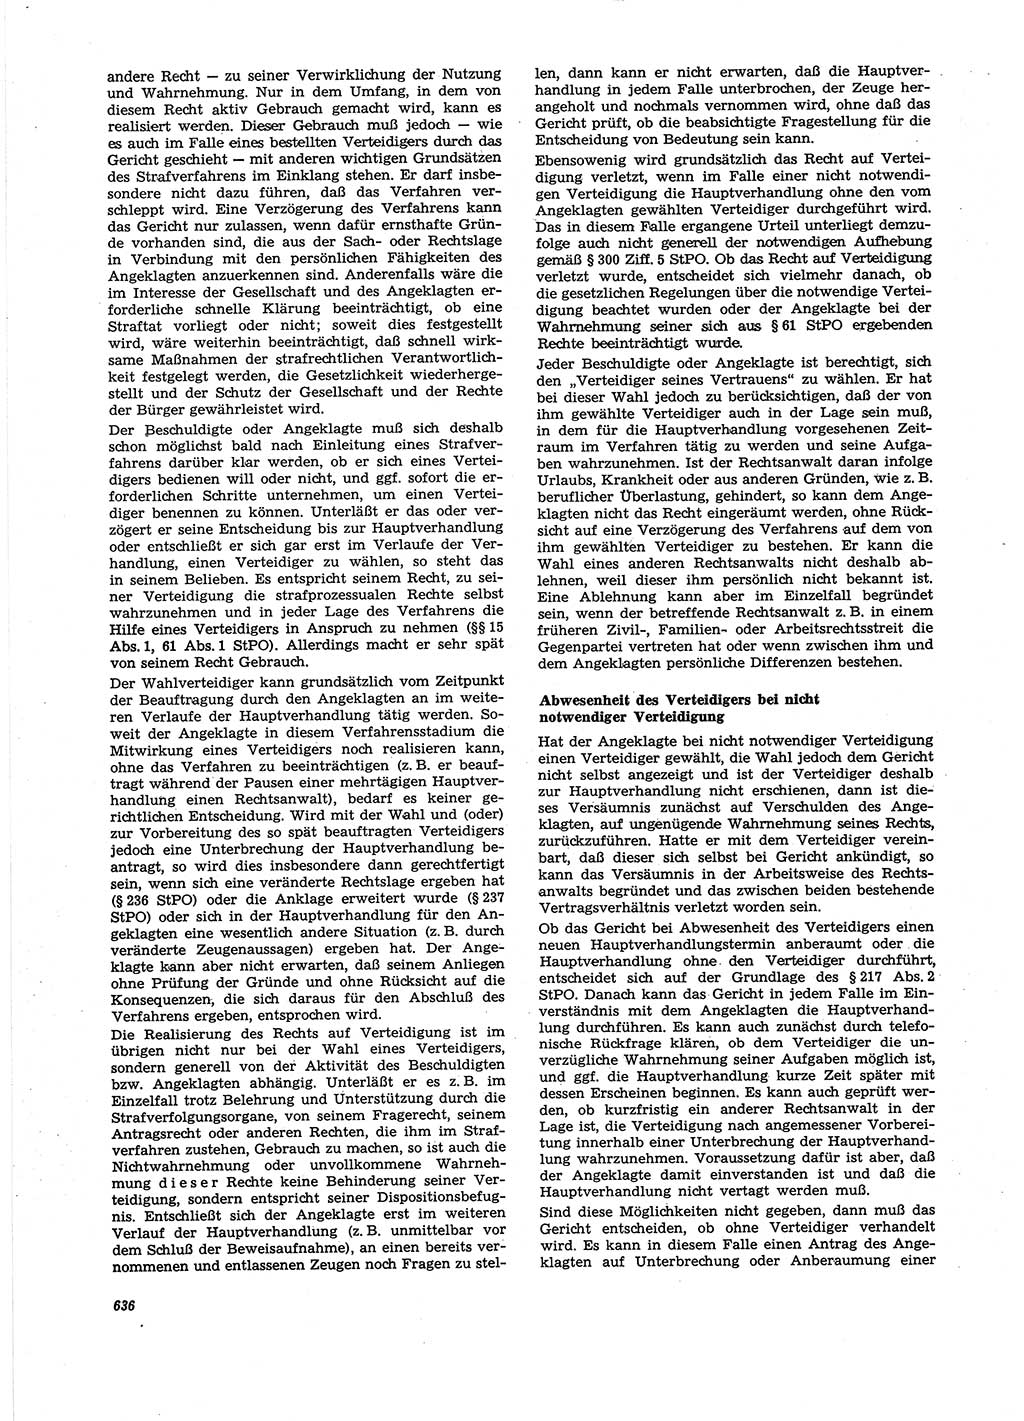 Neue Justiz (NJ), Zeitschrift für Recht und Rechtswissenschaft [Deutsche Demokratische Republik (DDR)], 27. Jahrgang 1973, Seite 636 (NJ DDR 1973, S. 636)